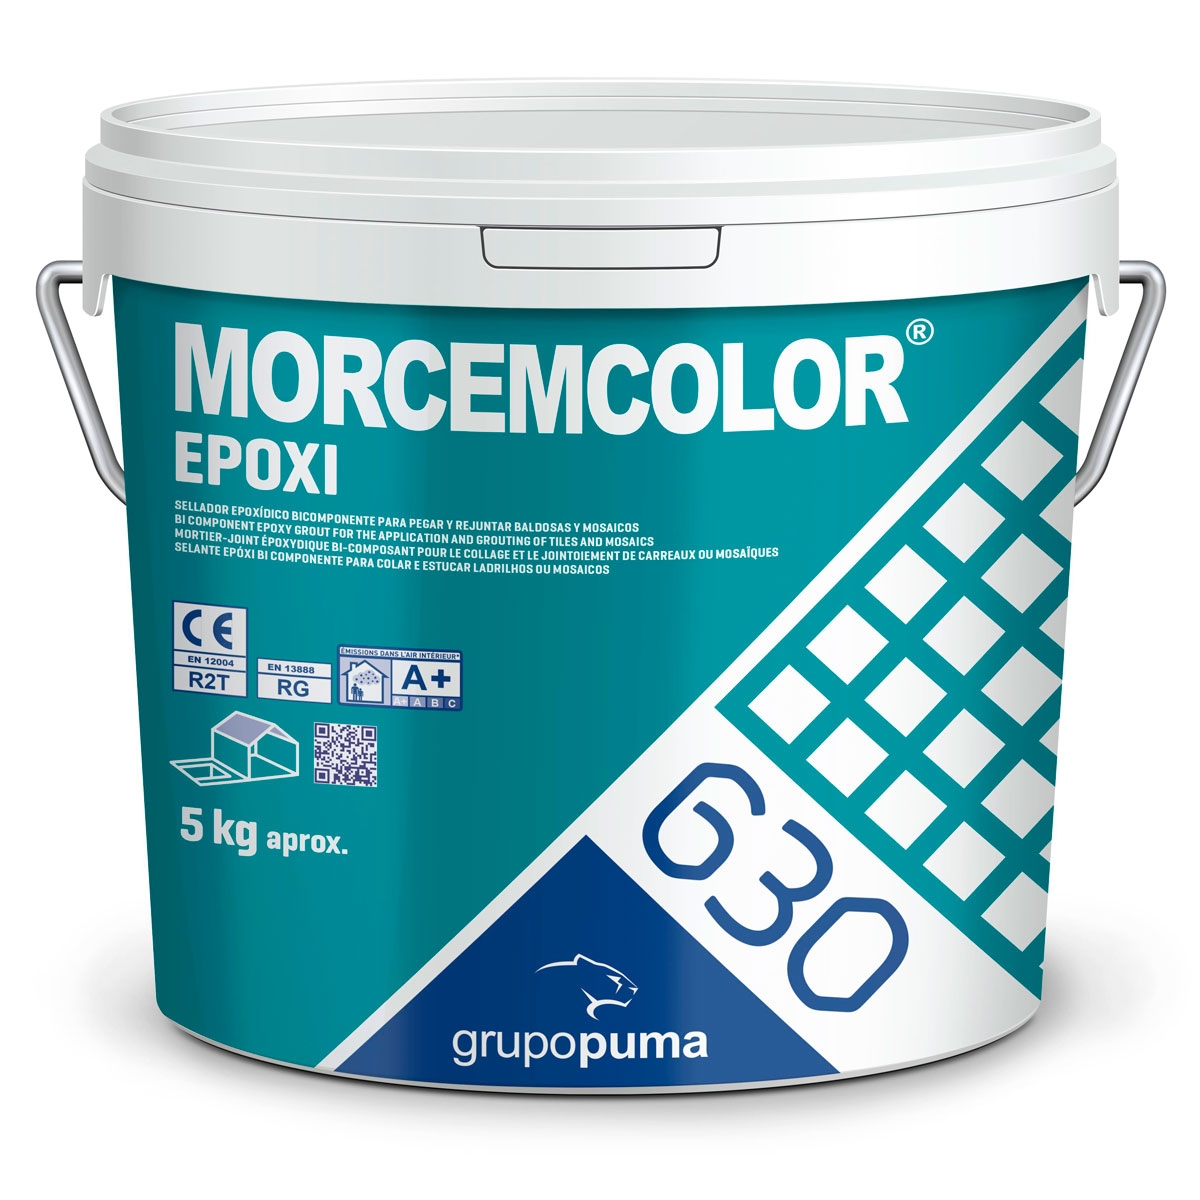 Morcemcolor Epoxy RG 5 Kg Bege - Puma Group